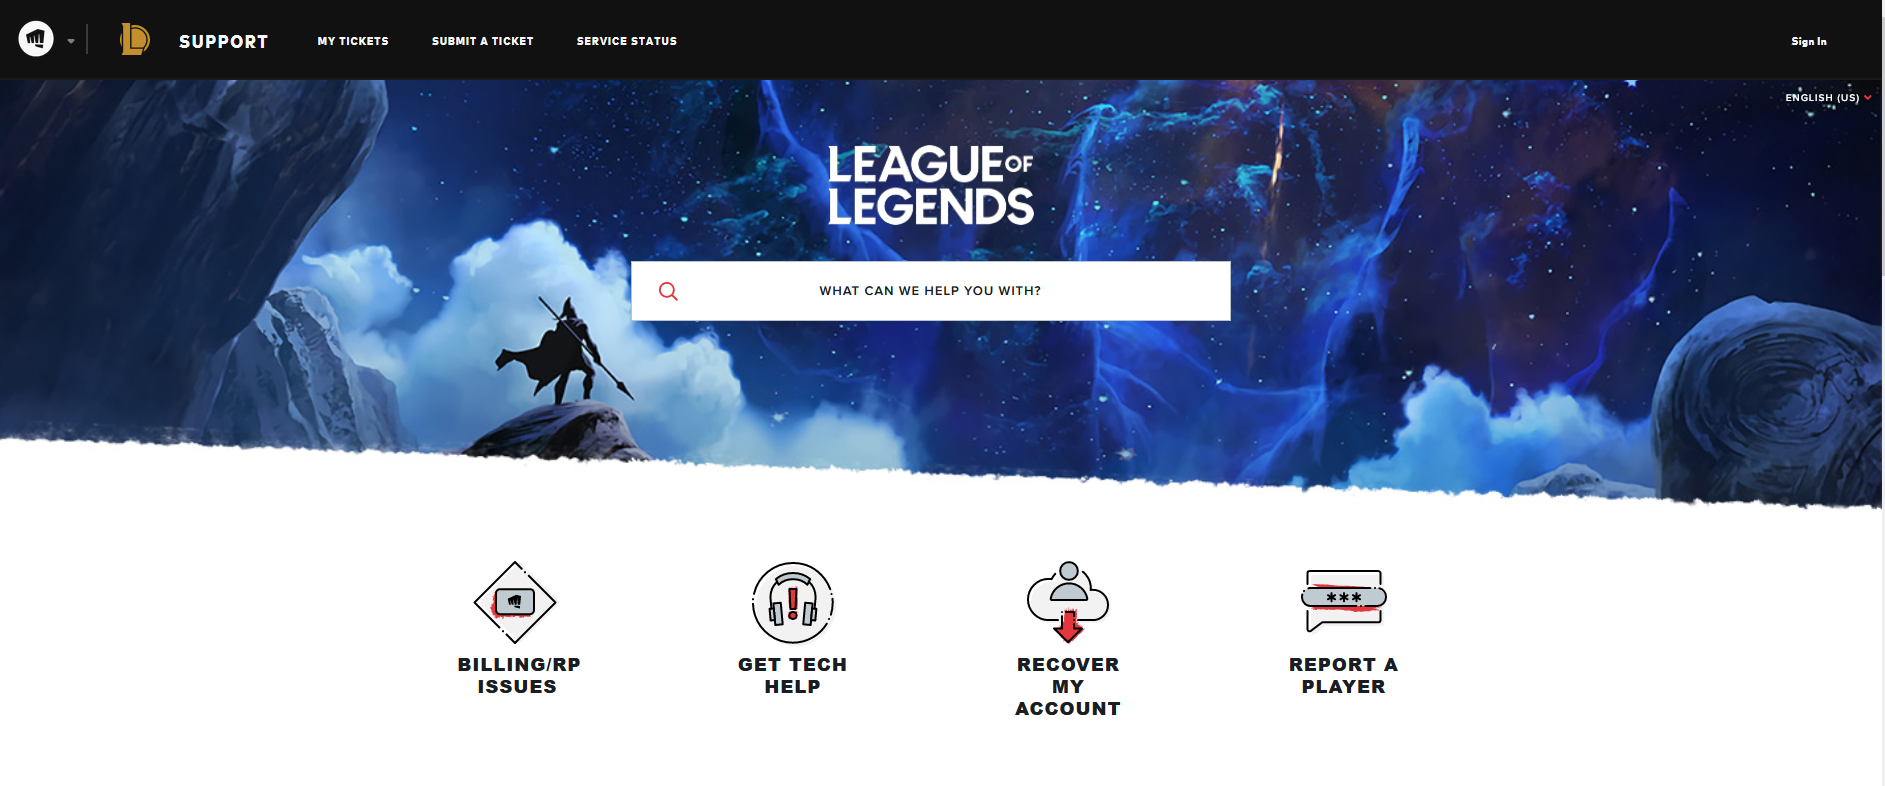 League of Legends Email Verification In Client – League of Legends